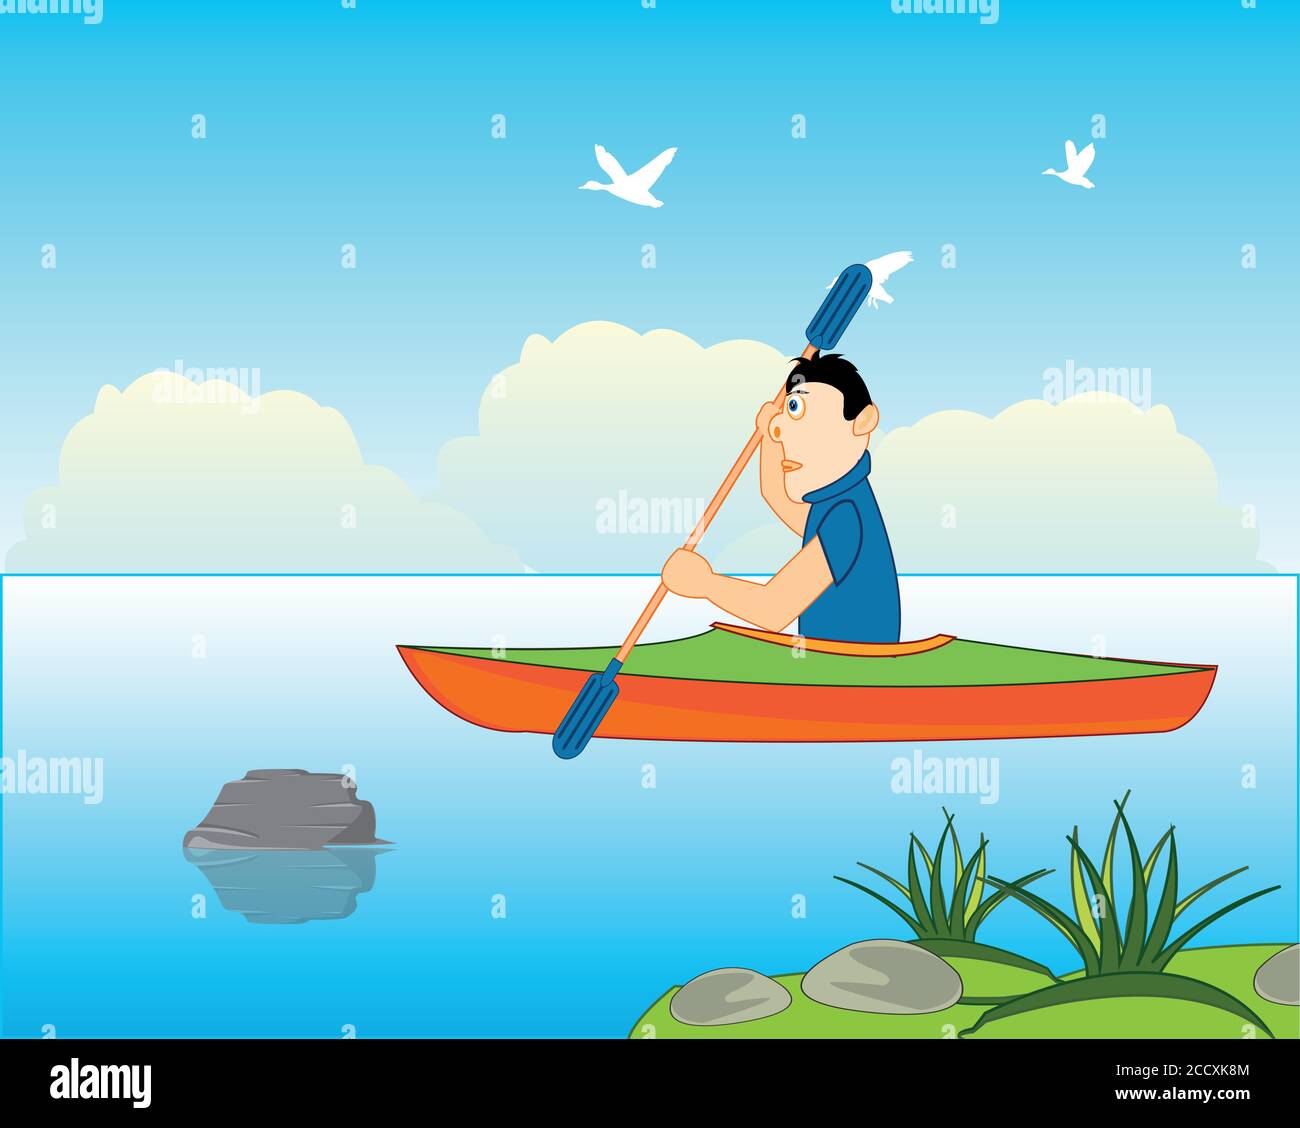 Hombre atleta navega en kayak en el río Ilustración del Vector